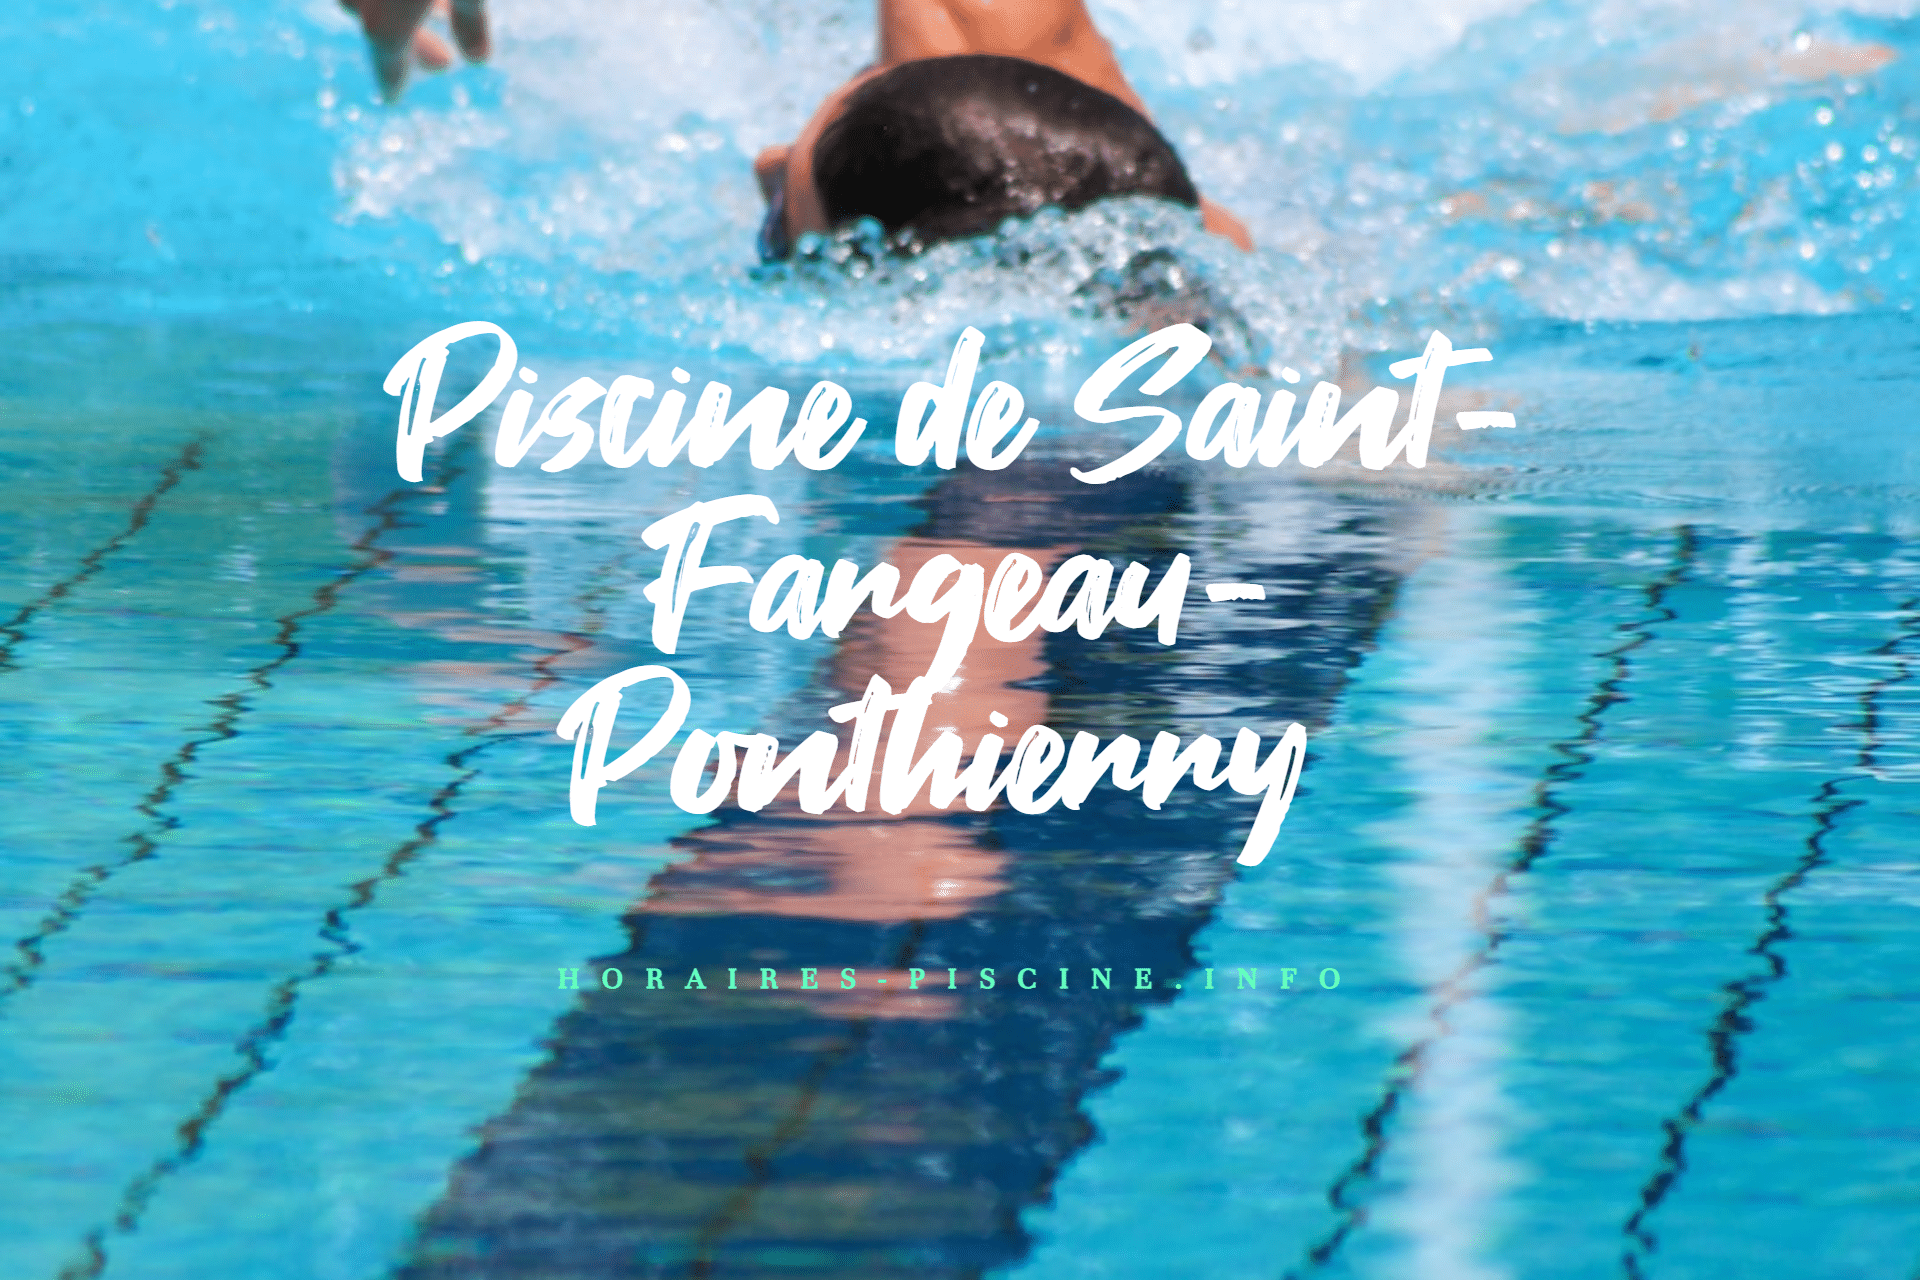 horaires Piscine de Saint-Fargeau-Ponthierry